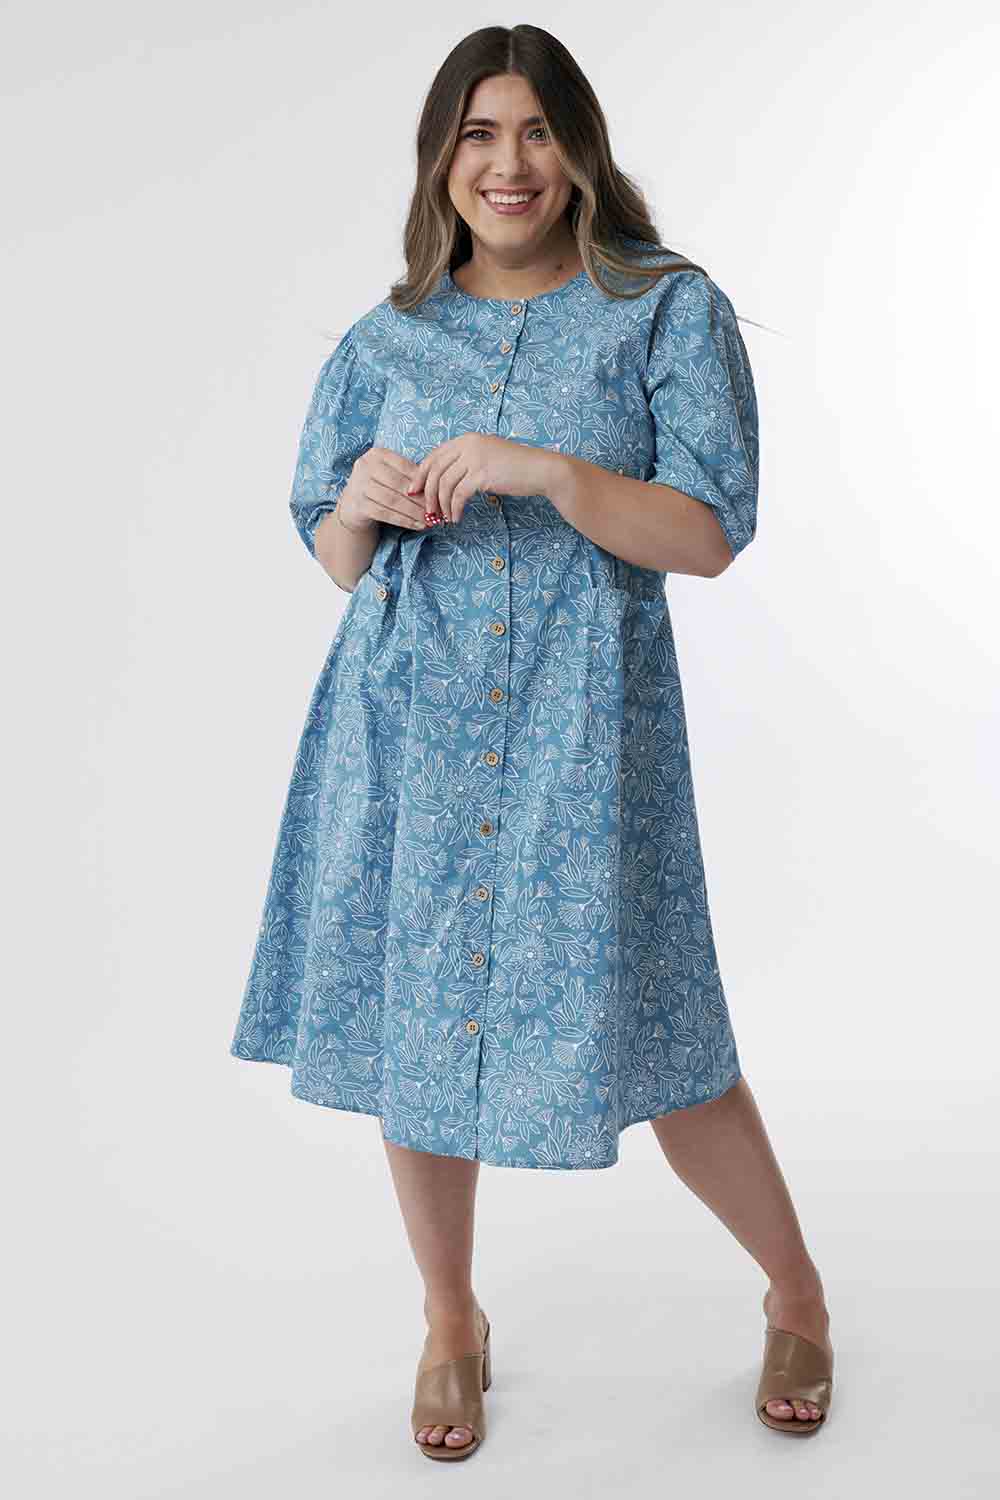 Persona invadere få øje på Alice Vintage Dress – ModestPop.com